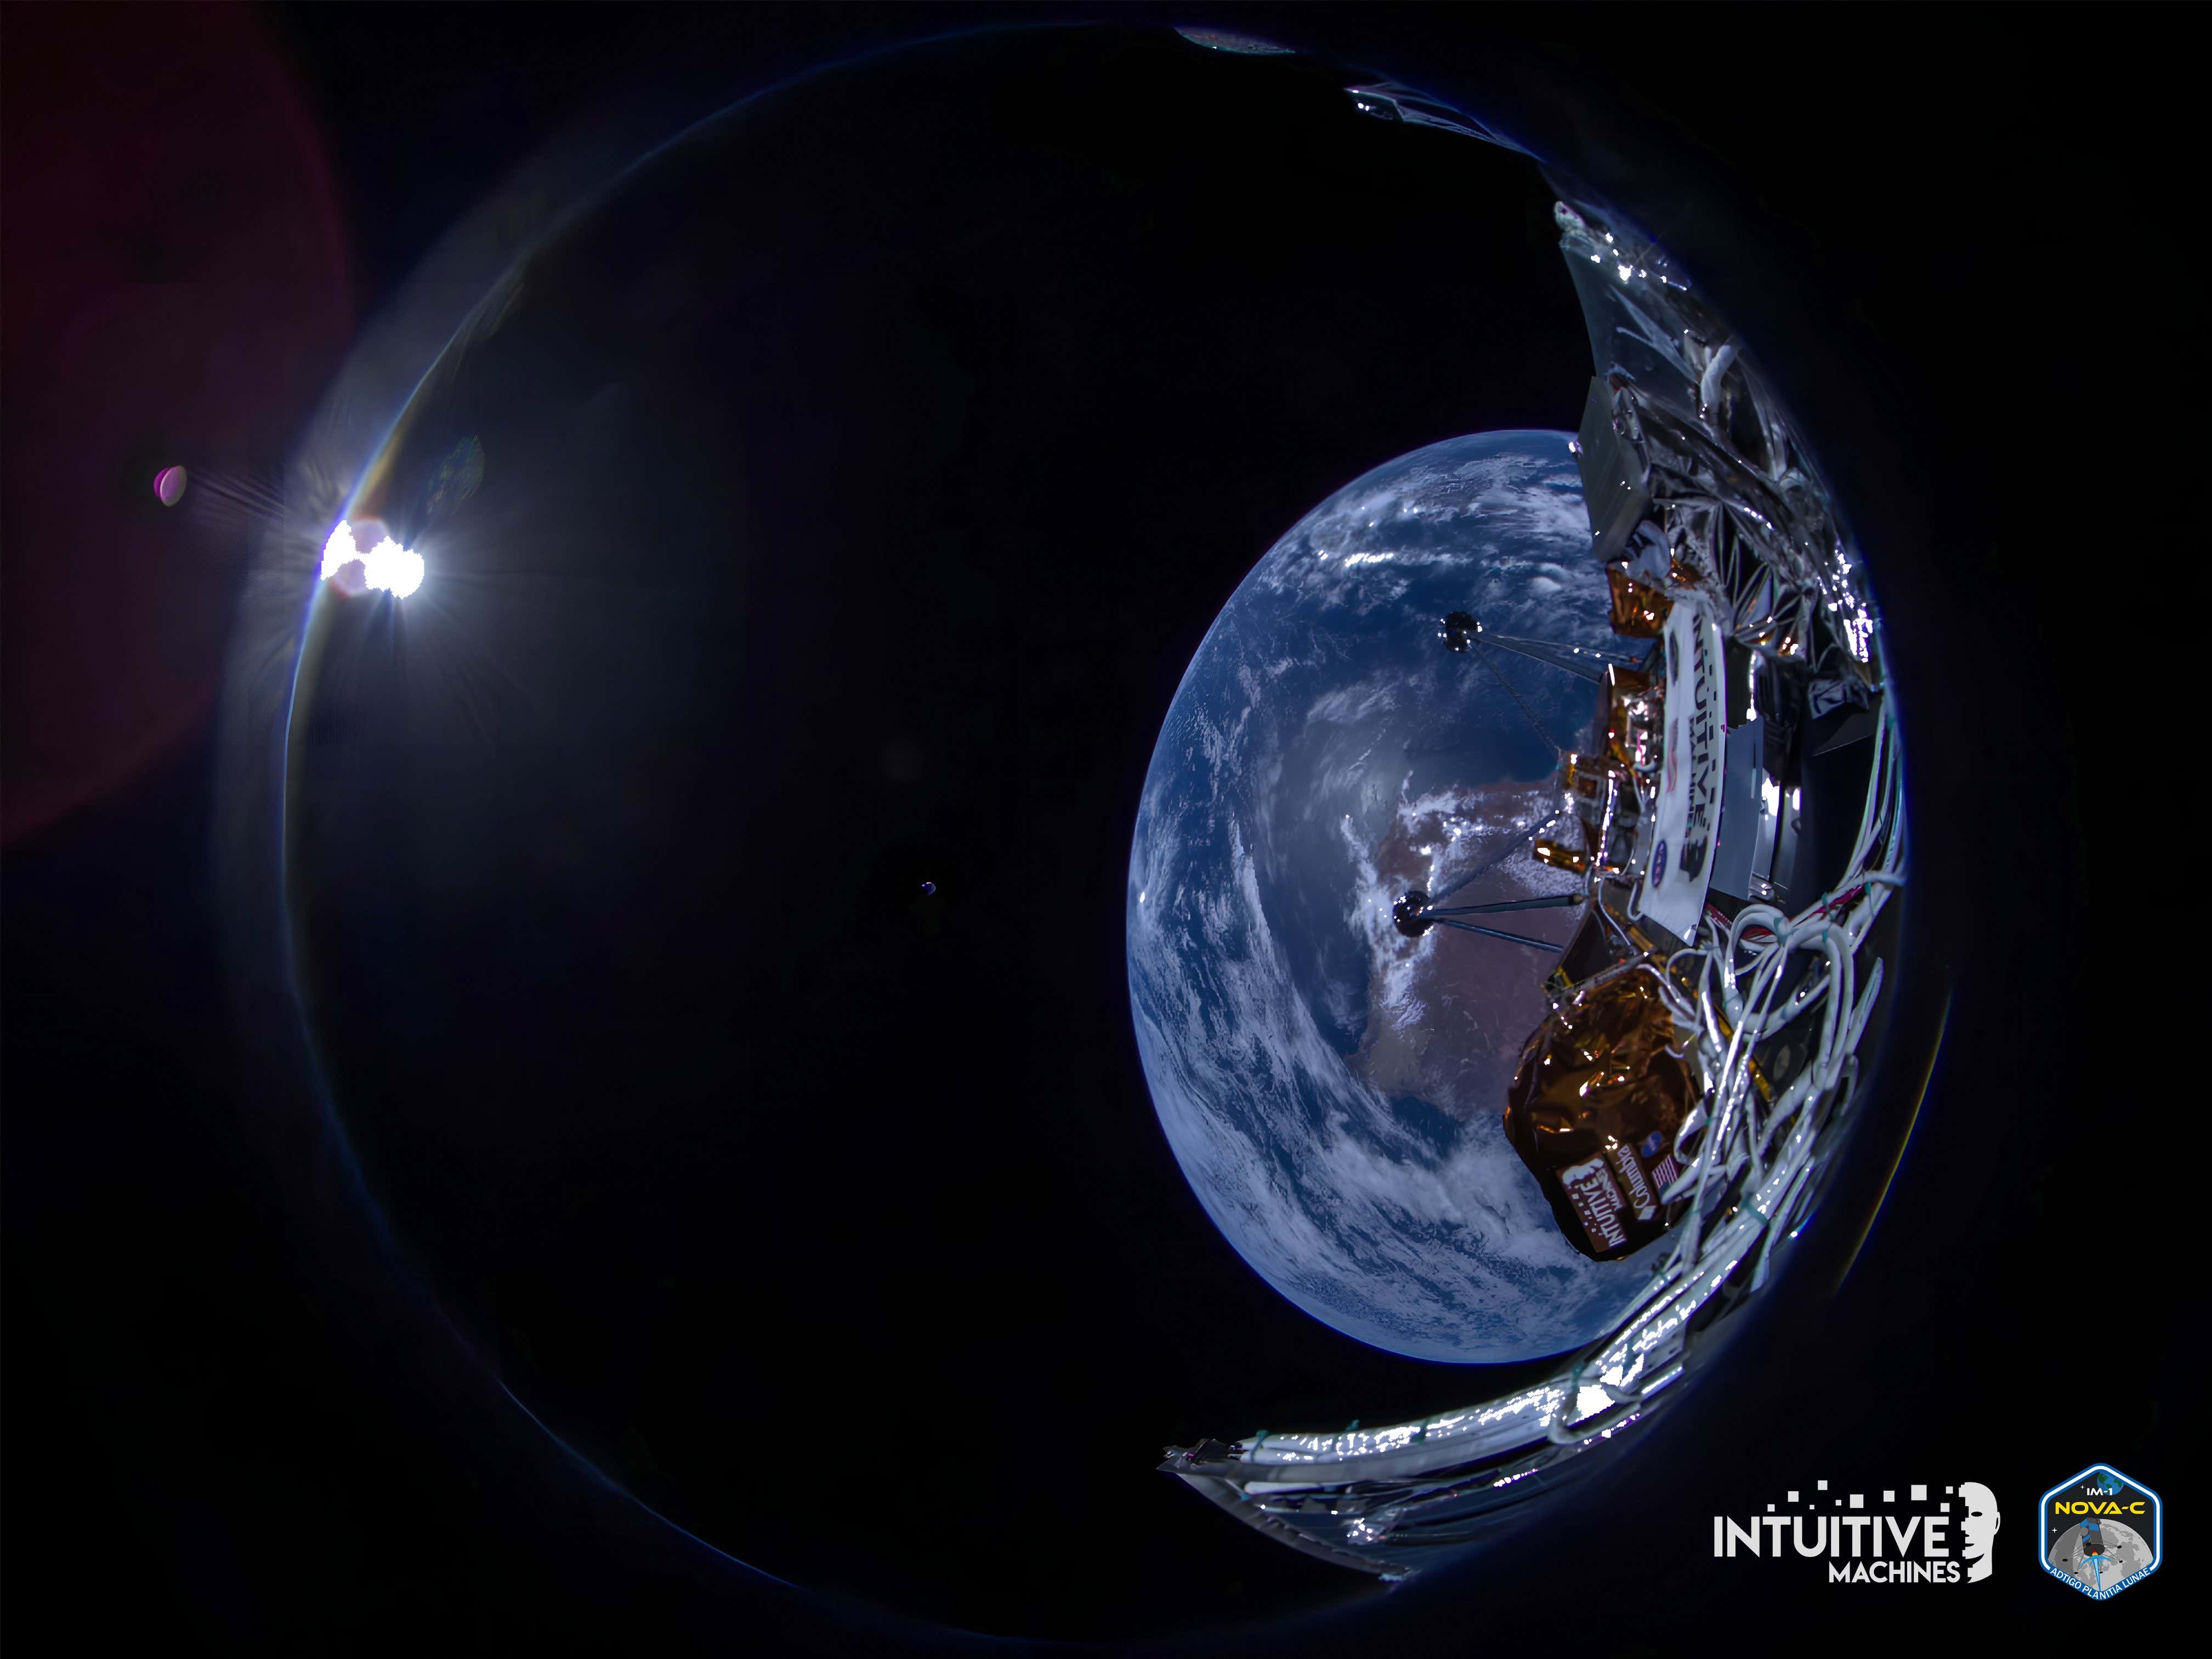 Imagen para el artículo titulado Odysseus Lander toma magníficas fotografías de la Tierra antes del alunizaje